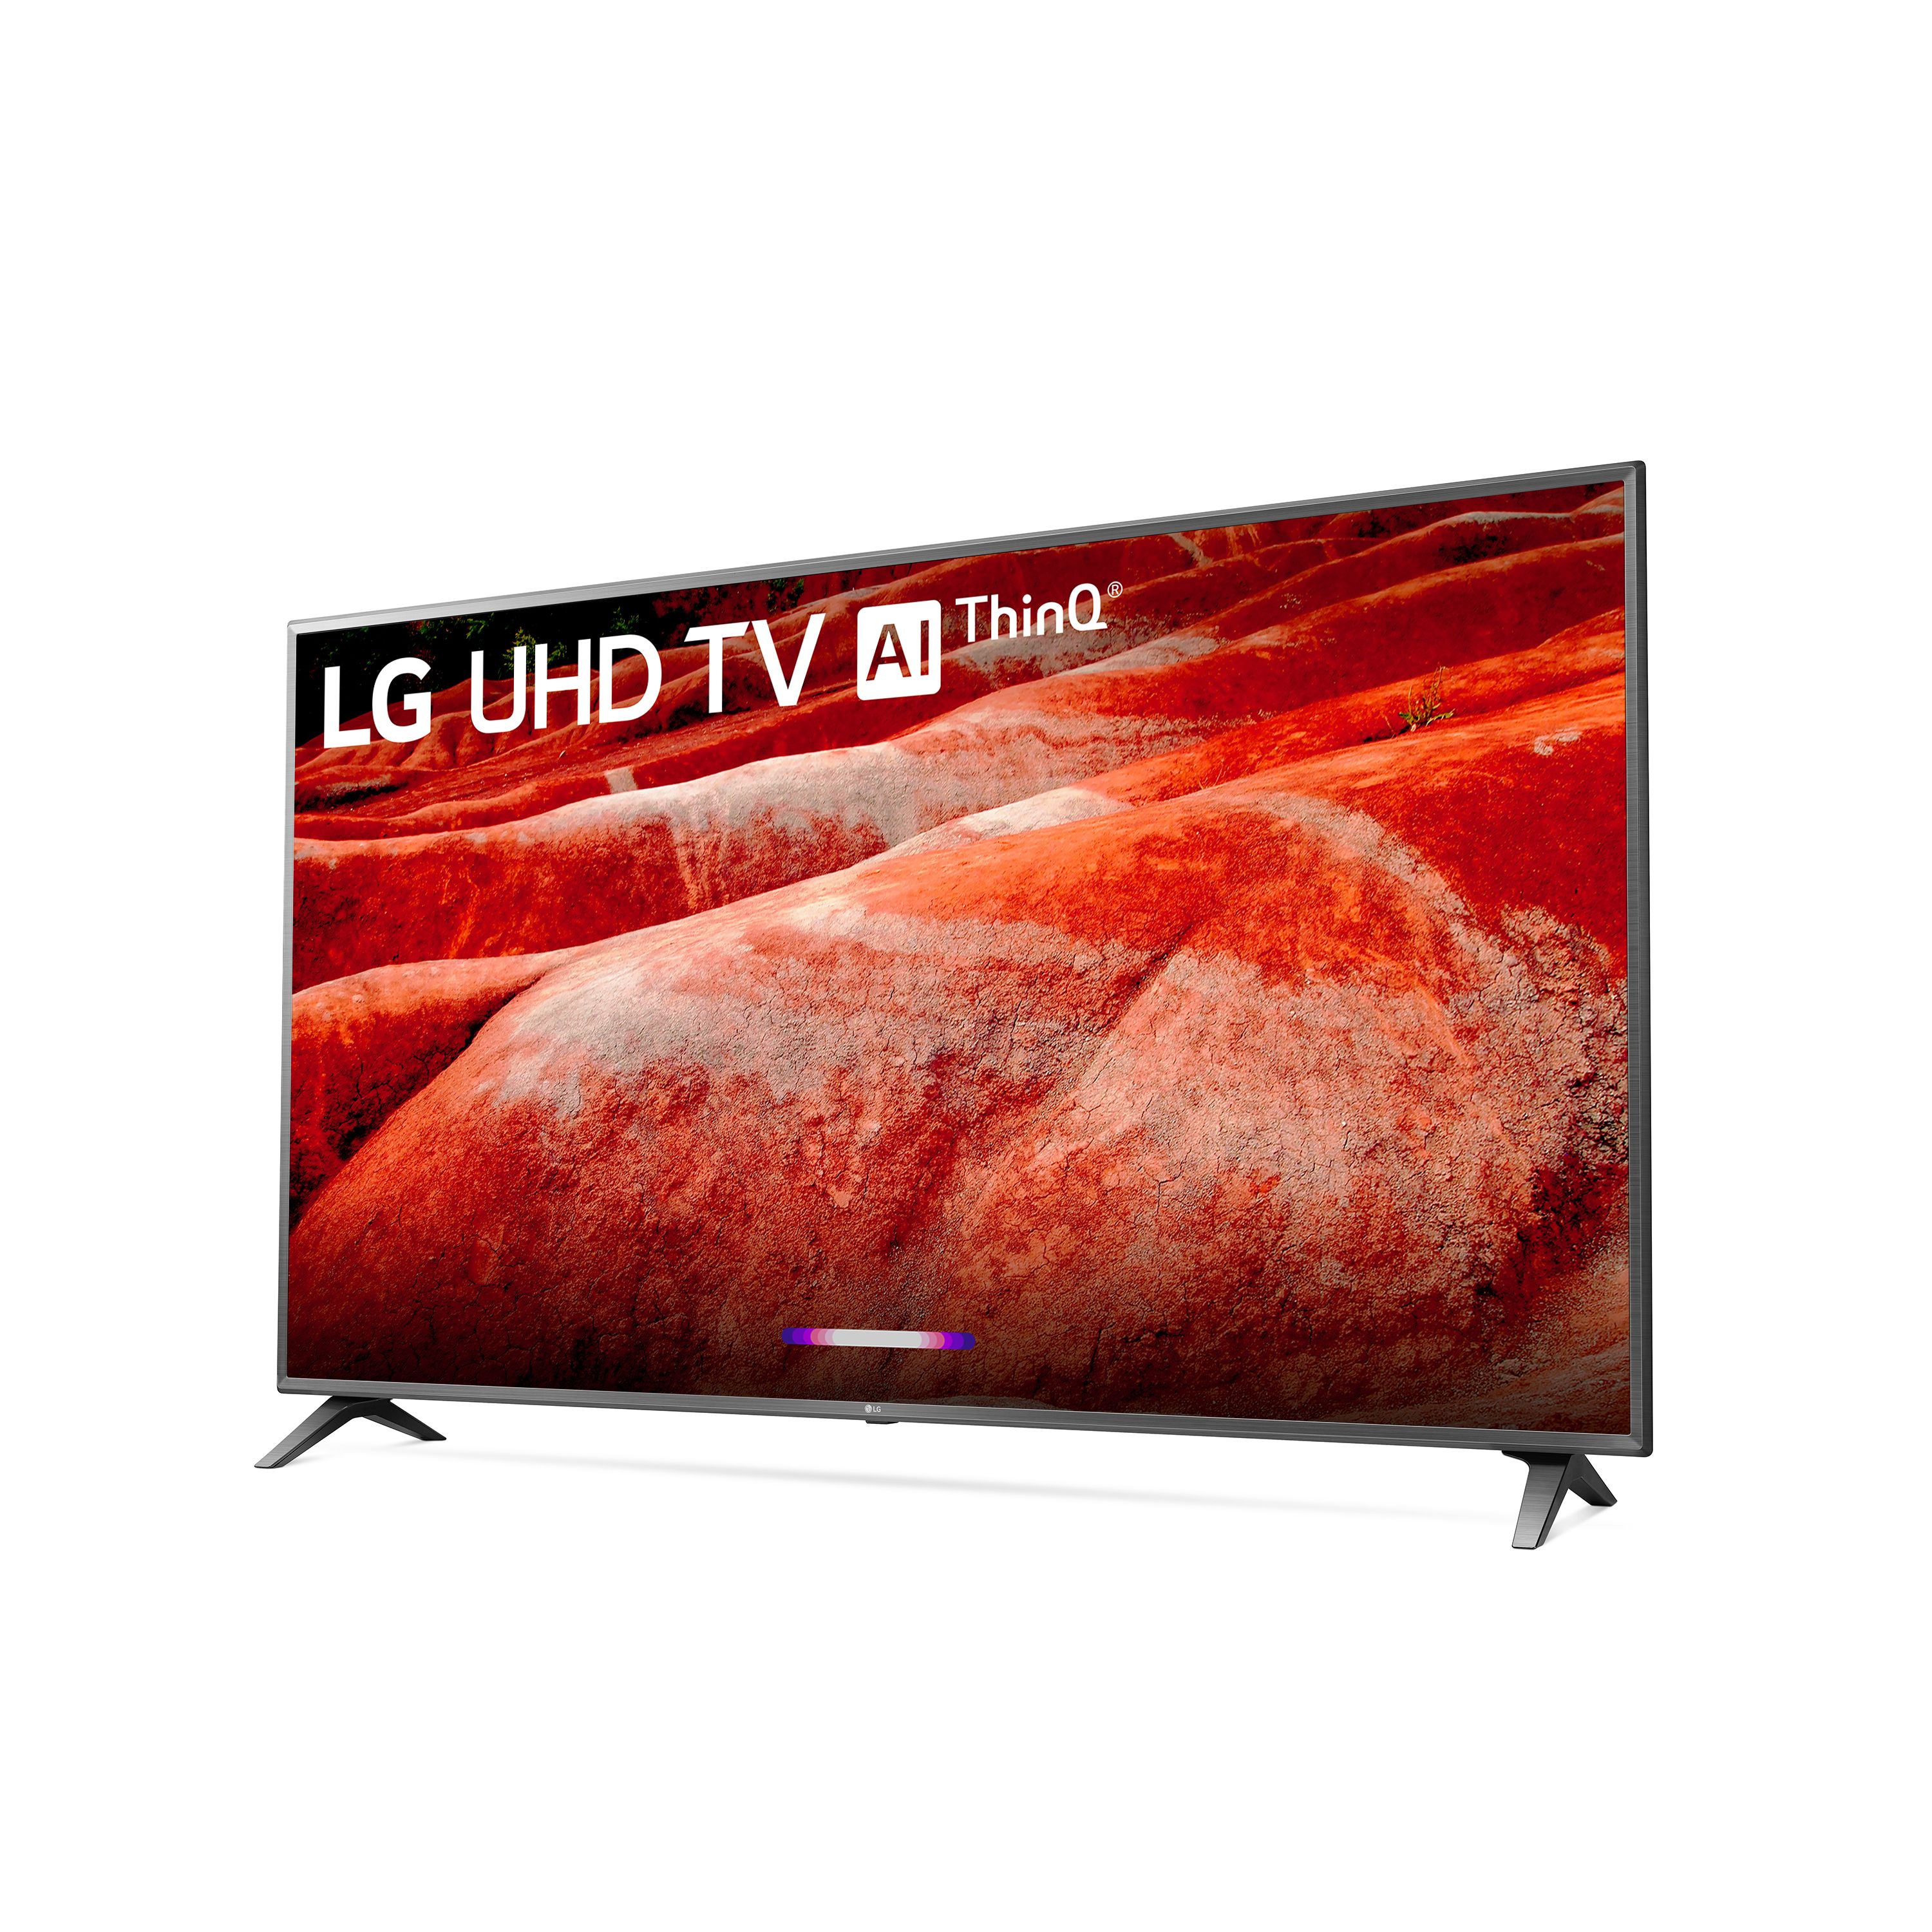 LG 86" Class 4K (2160P) Ultra HD Smart LED HDR TV 86UM8070PUA 2019 Model - image 3 of 14